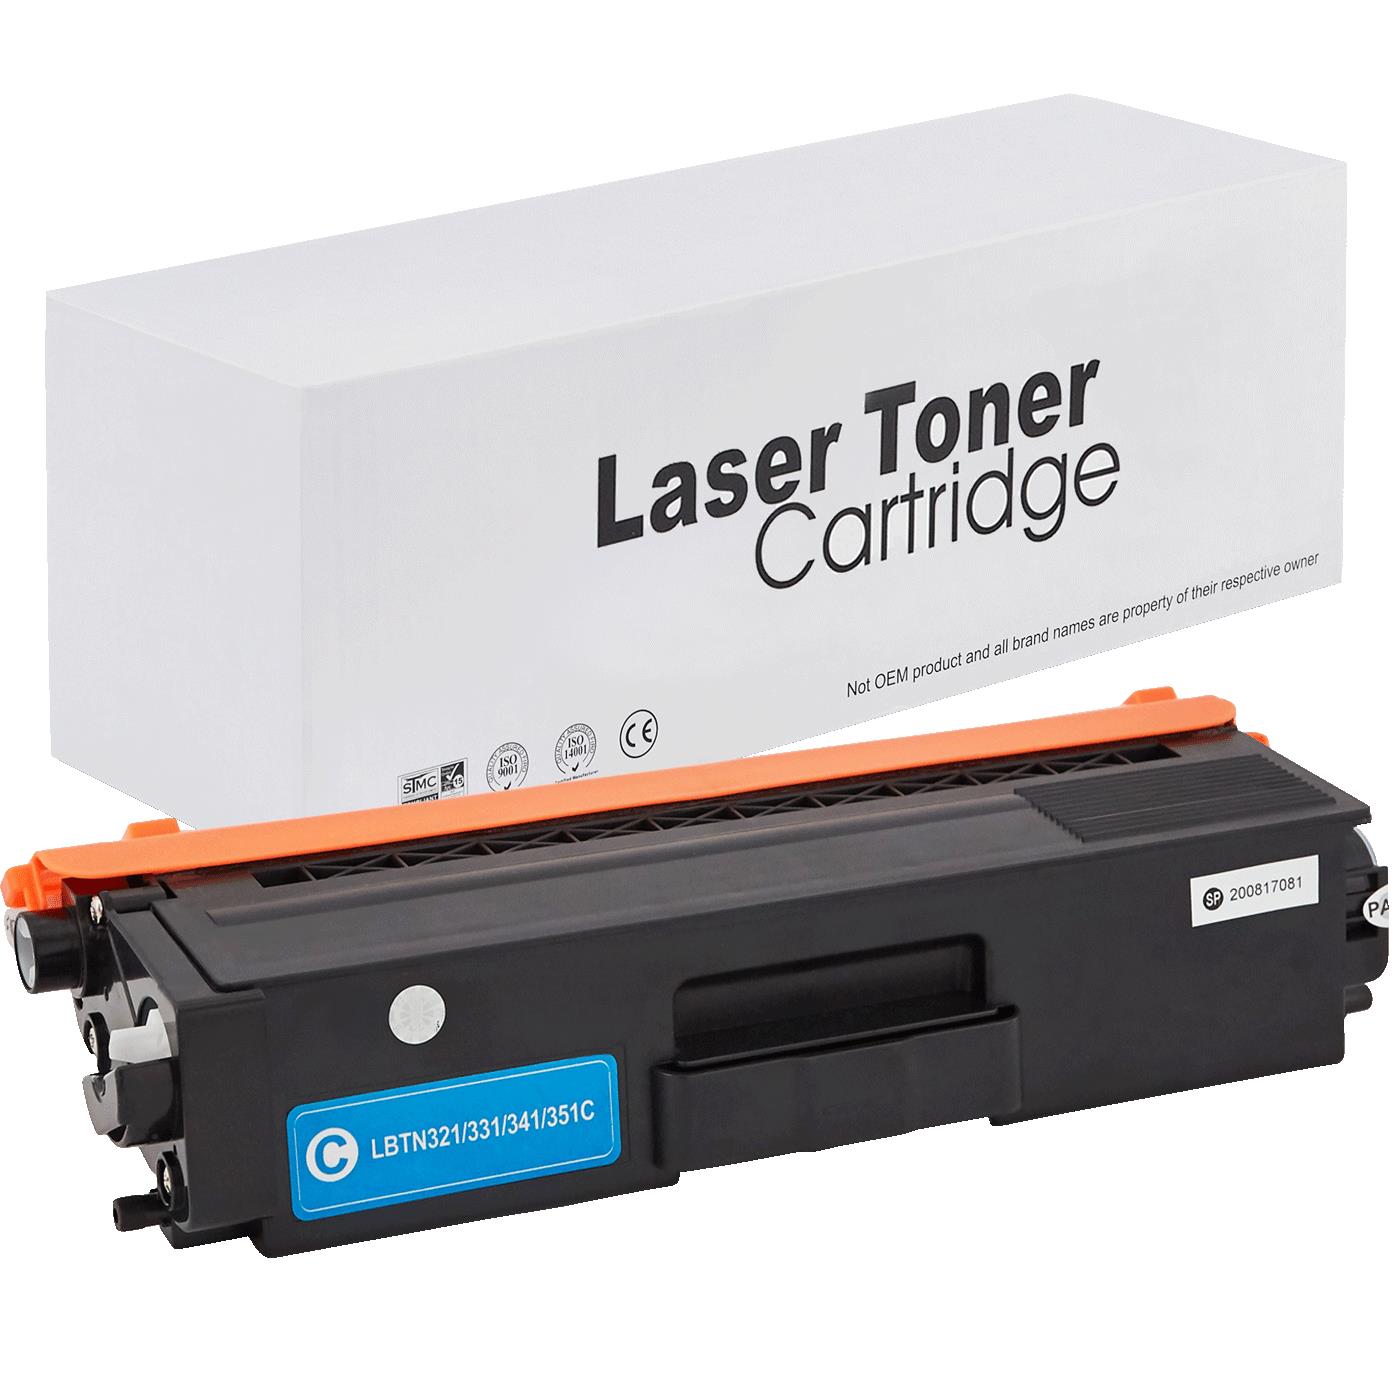 съвместима тонер касета за принтери и печатащи устройства на Brother MFC-L 8850 CDW Toner BR-321C | TN321C. Ниски цени, прецизно изпълнение, високо качество.